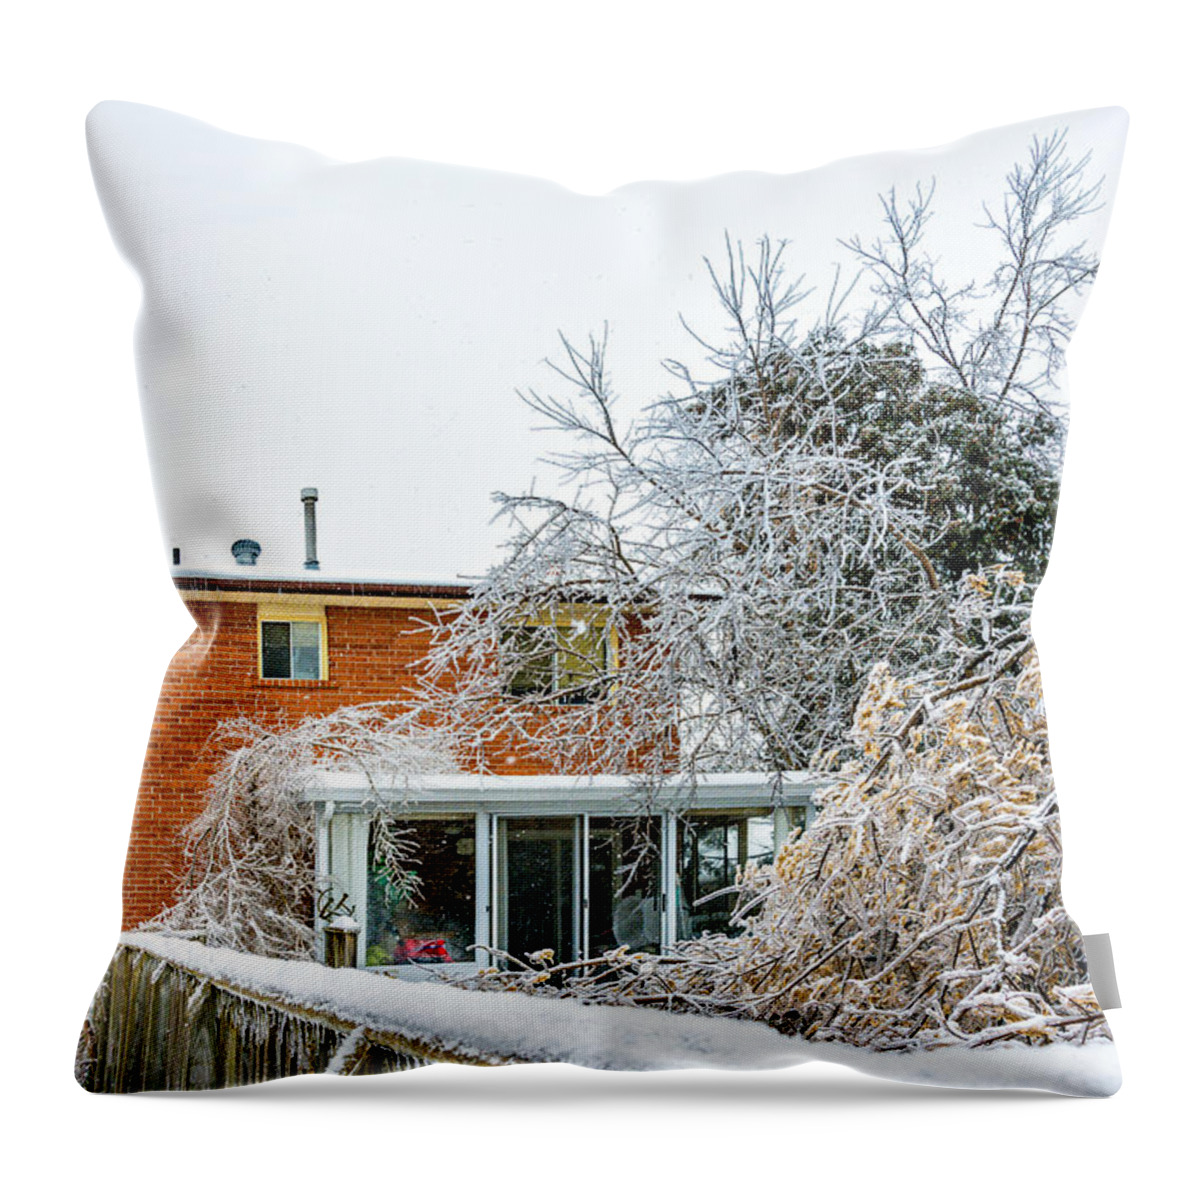 Steve Harrington Throw Pillow featuring the photograph My Backyard by Steve Harrington